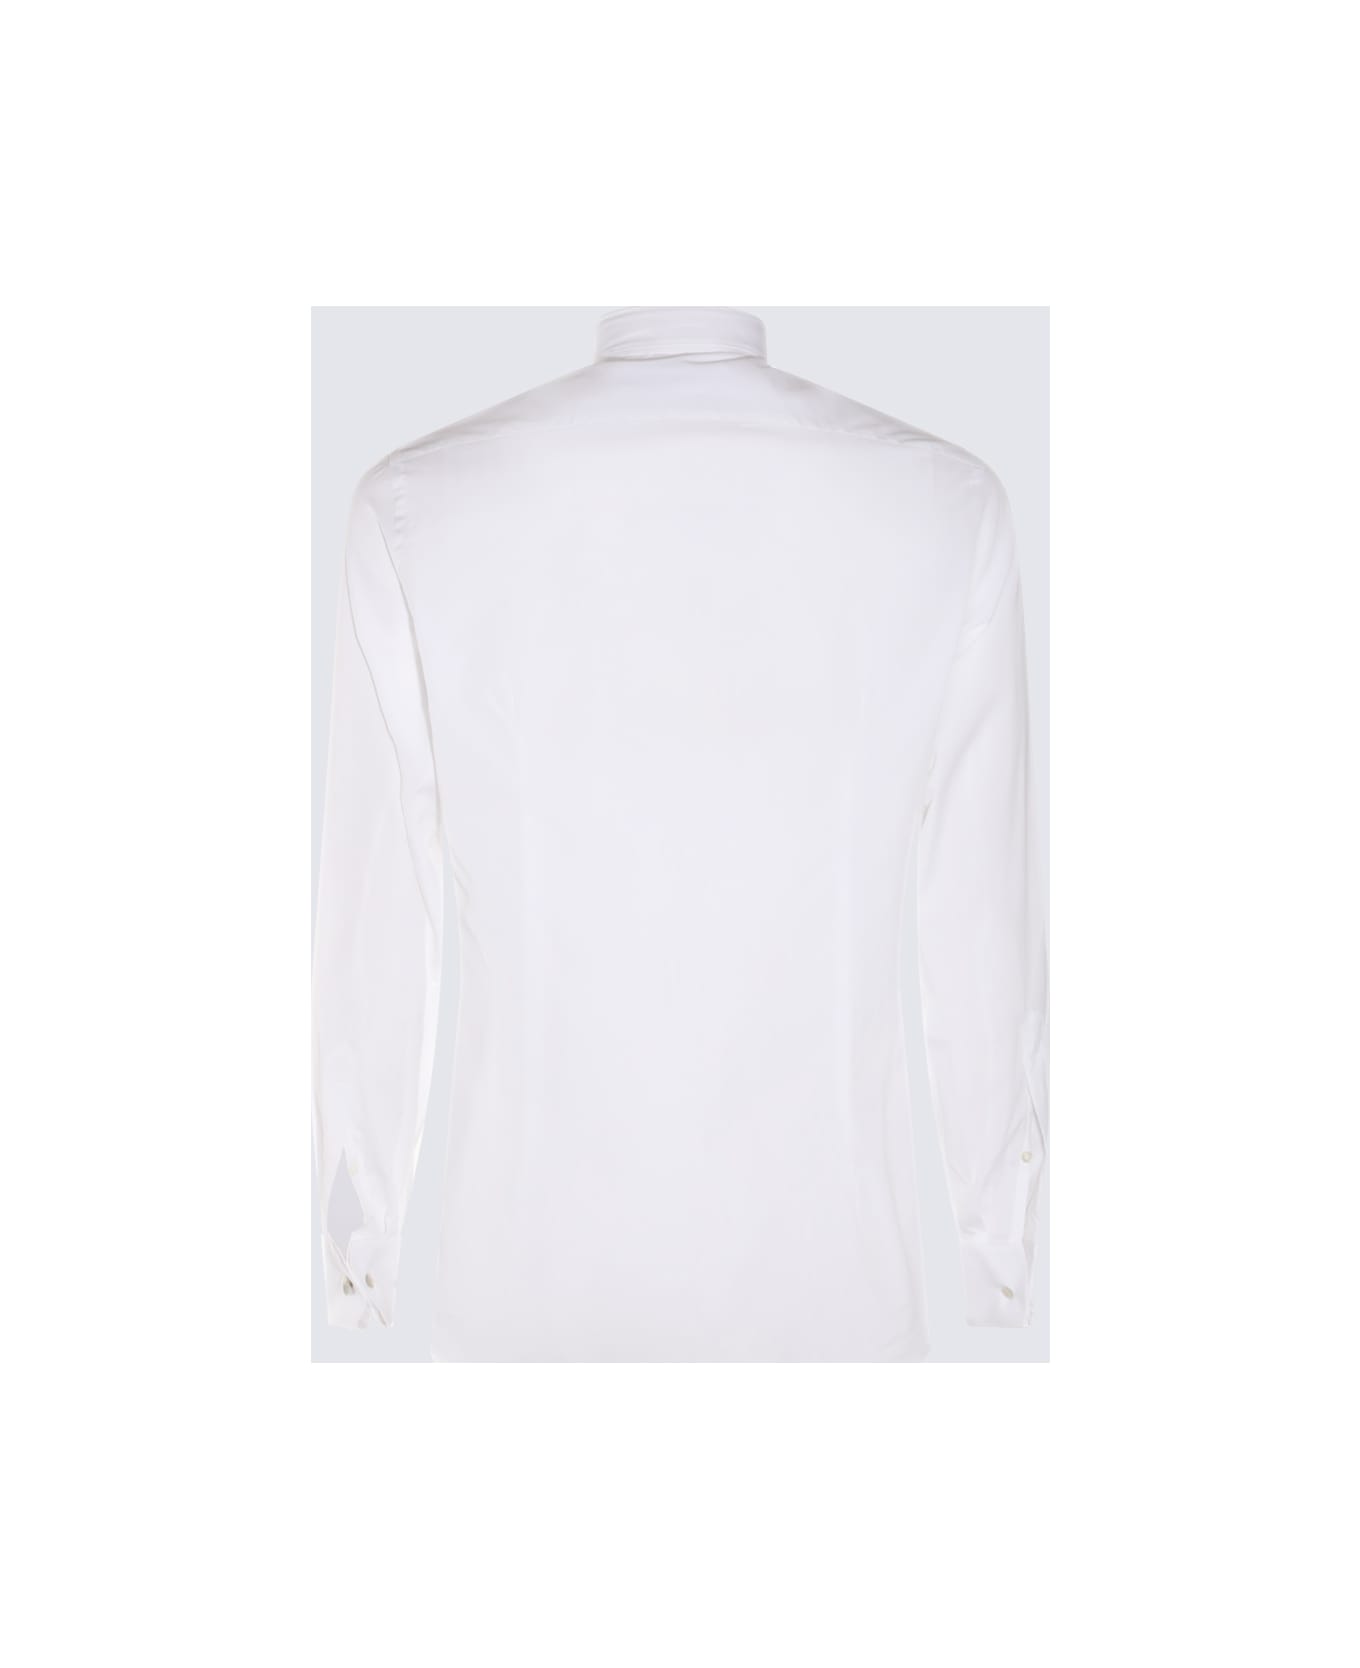 Lardini White Cotton Shirt - White